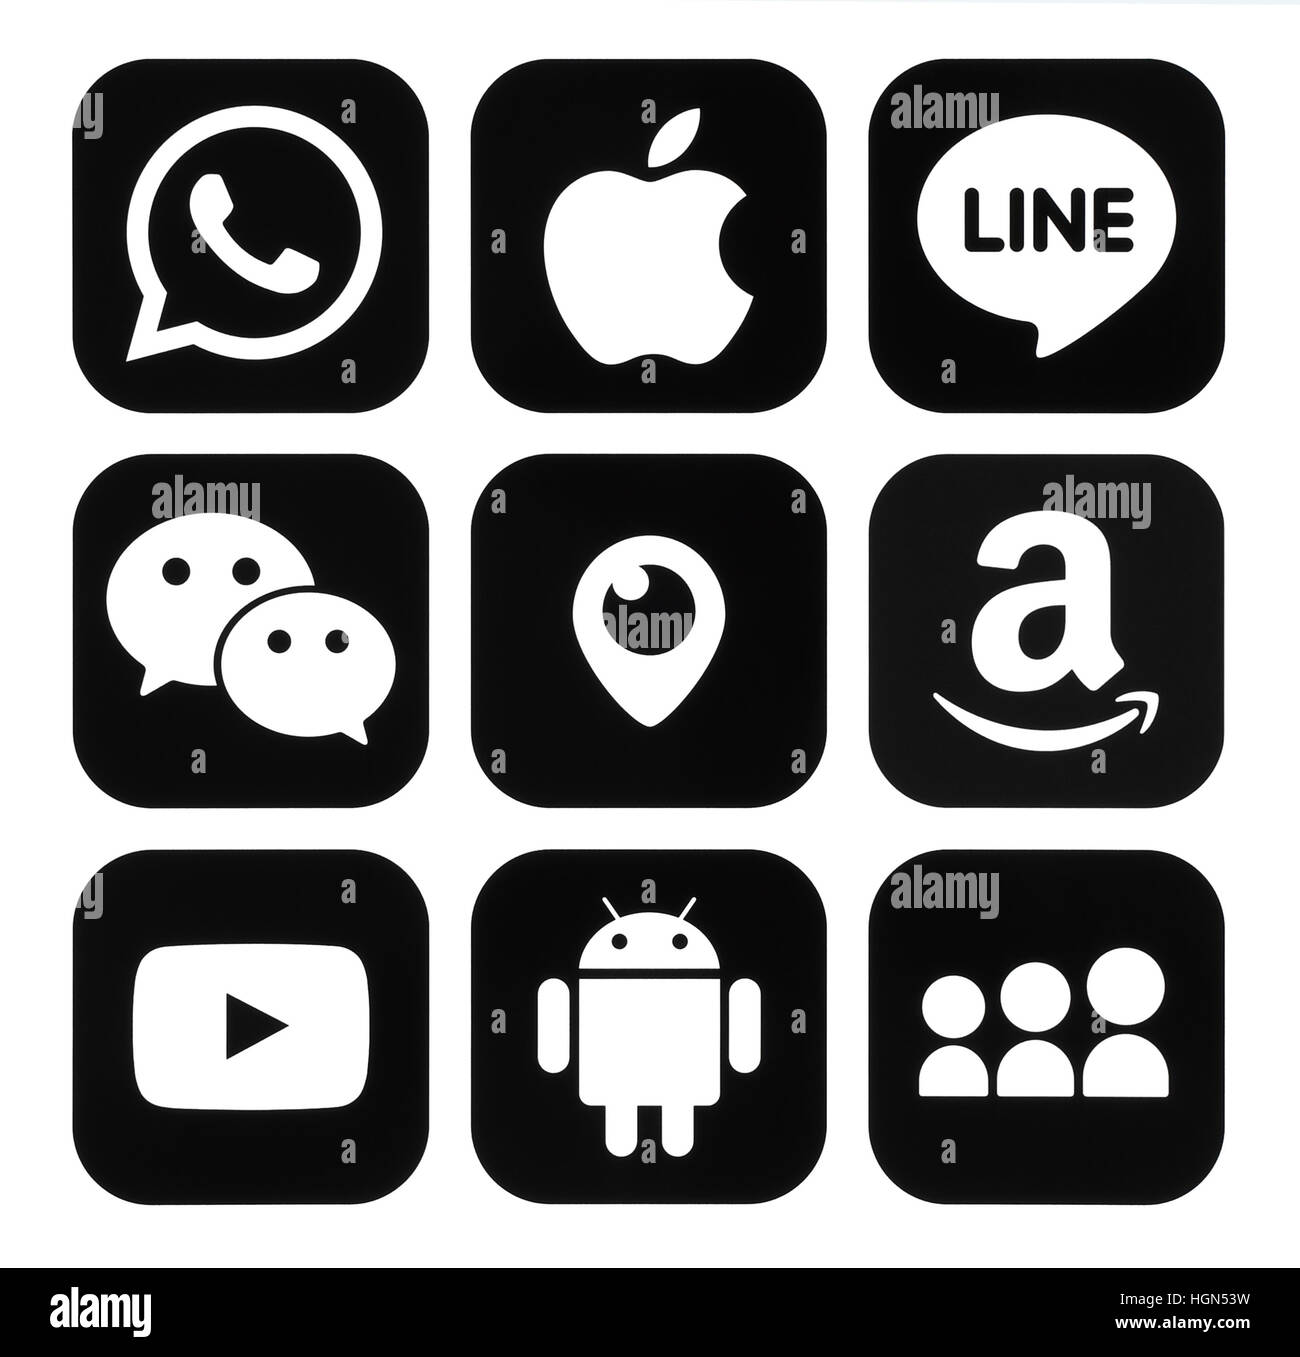 Kiew, Ukraine - 7. November 2016: Sammlung von beliebten mobilen apps schwarze Logos auf Papier gedruckt: Viber, Apple, Line, WeChat, Periskop, Amazon, Youtu Stockfoto